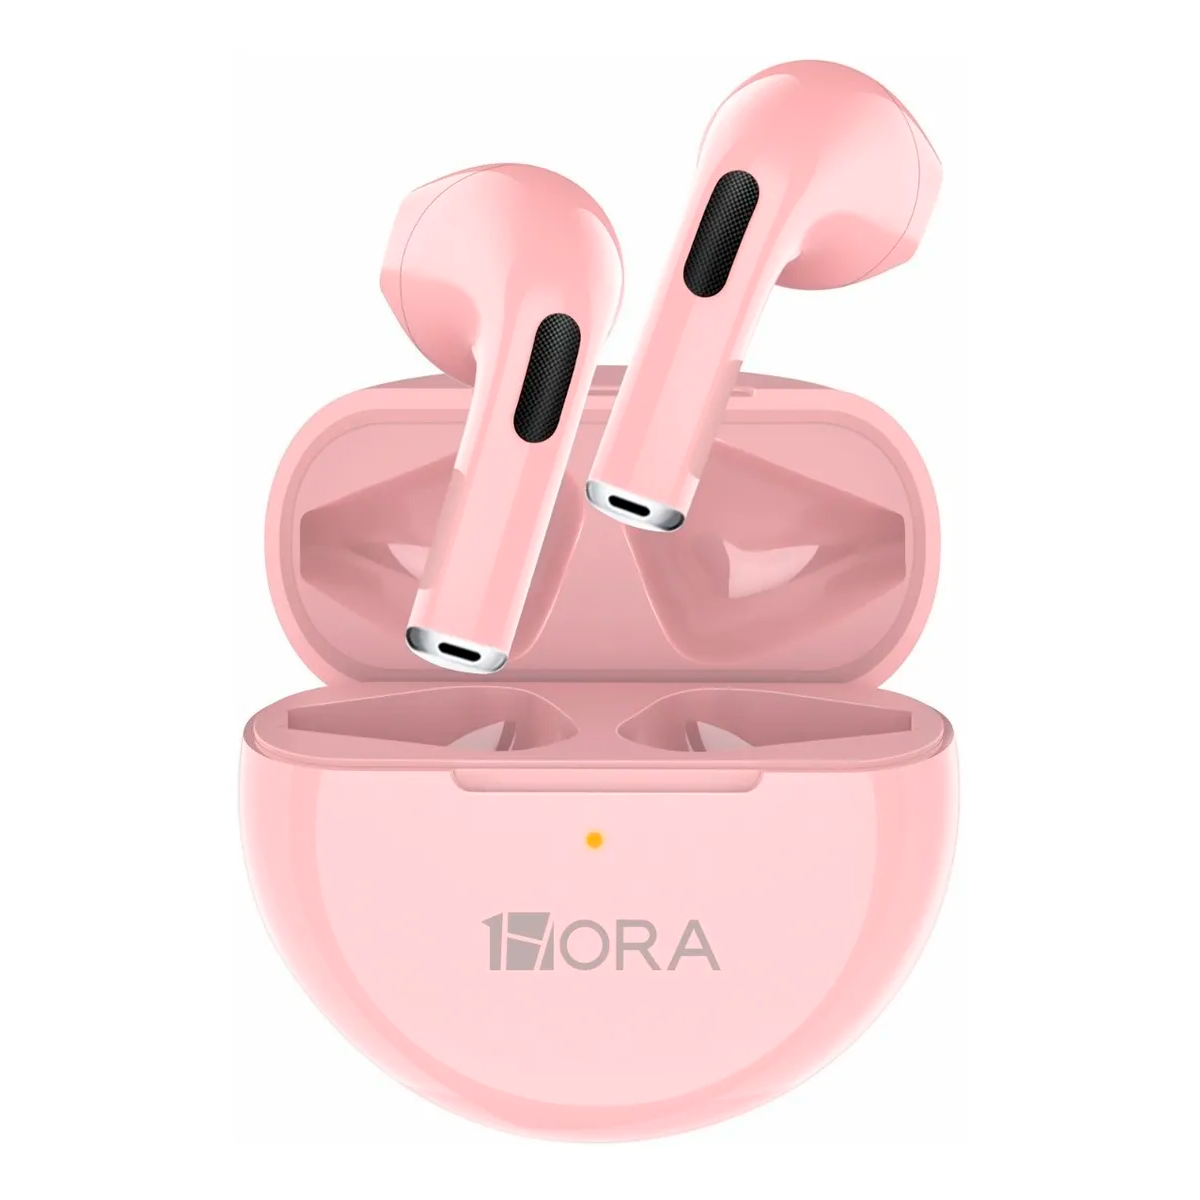 Audifonos Inalámbricos In-ear Manos Libres Aut119 1 Hora Con Bluetooth 5.0 Diseño Ergonómico Color Rosa